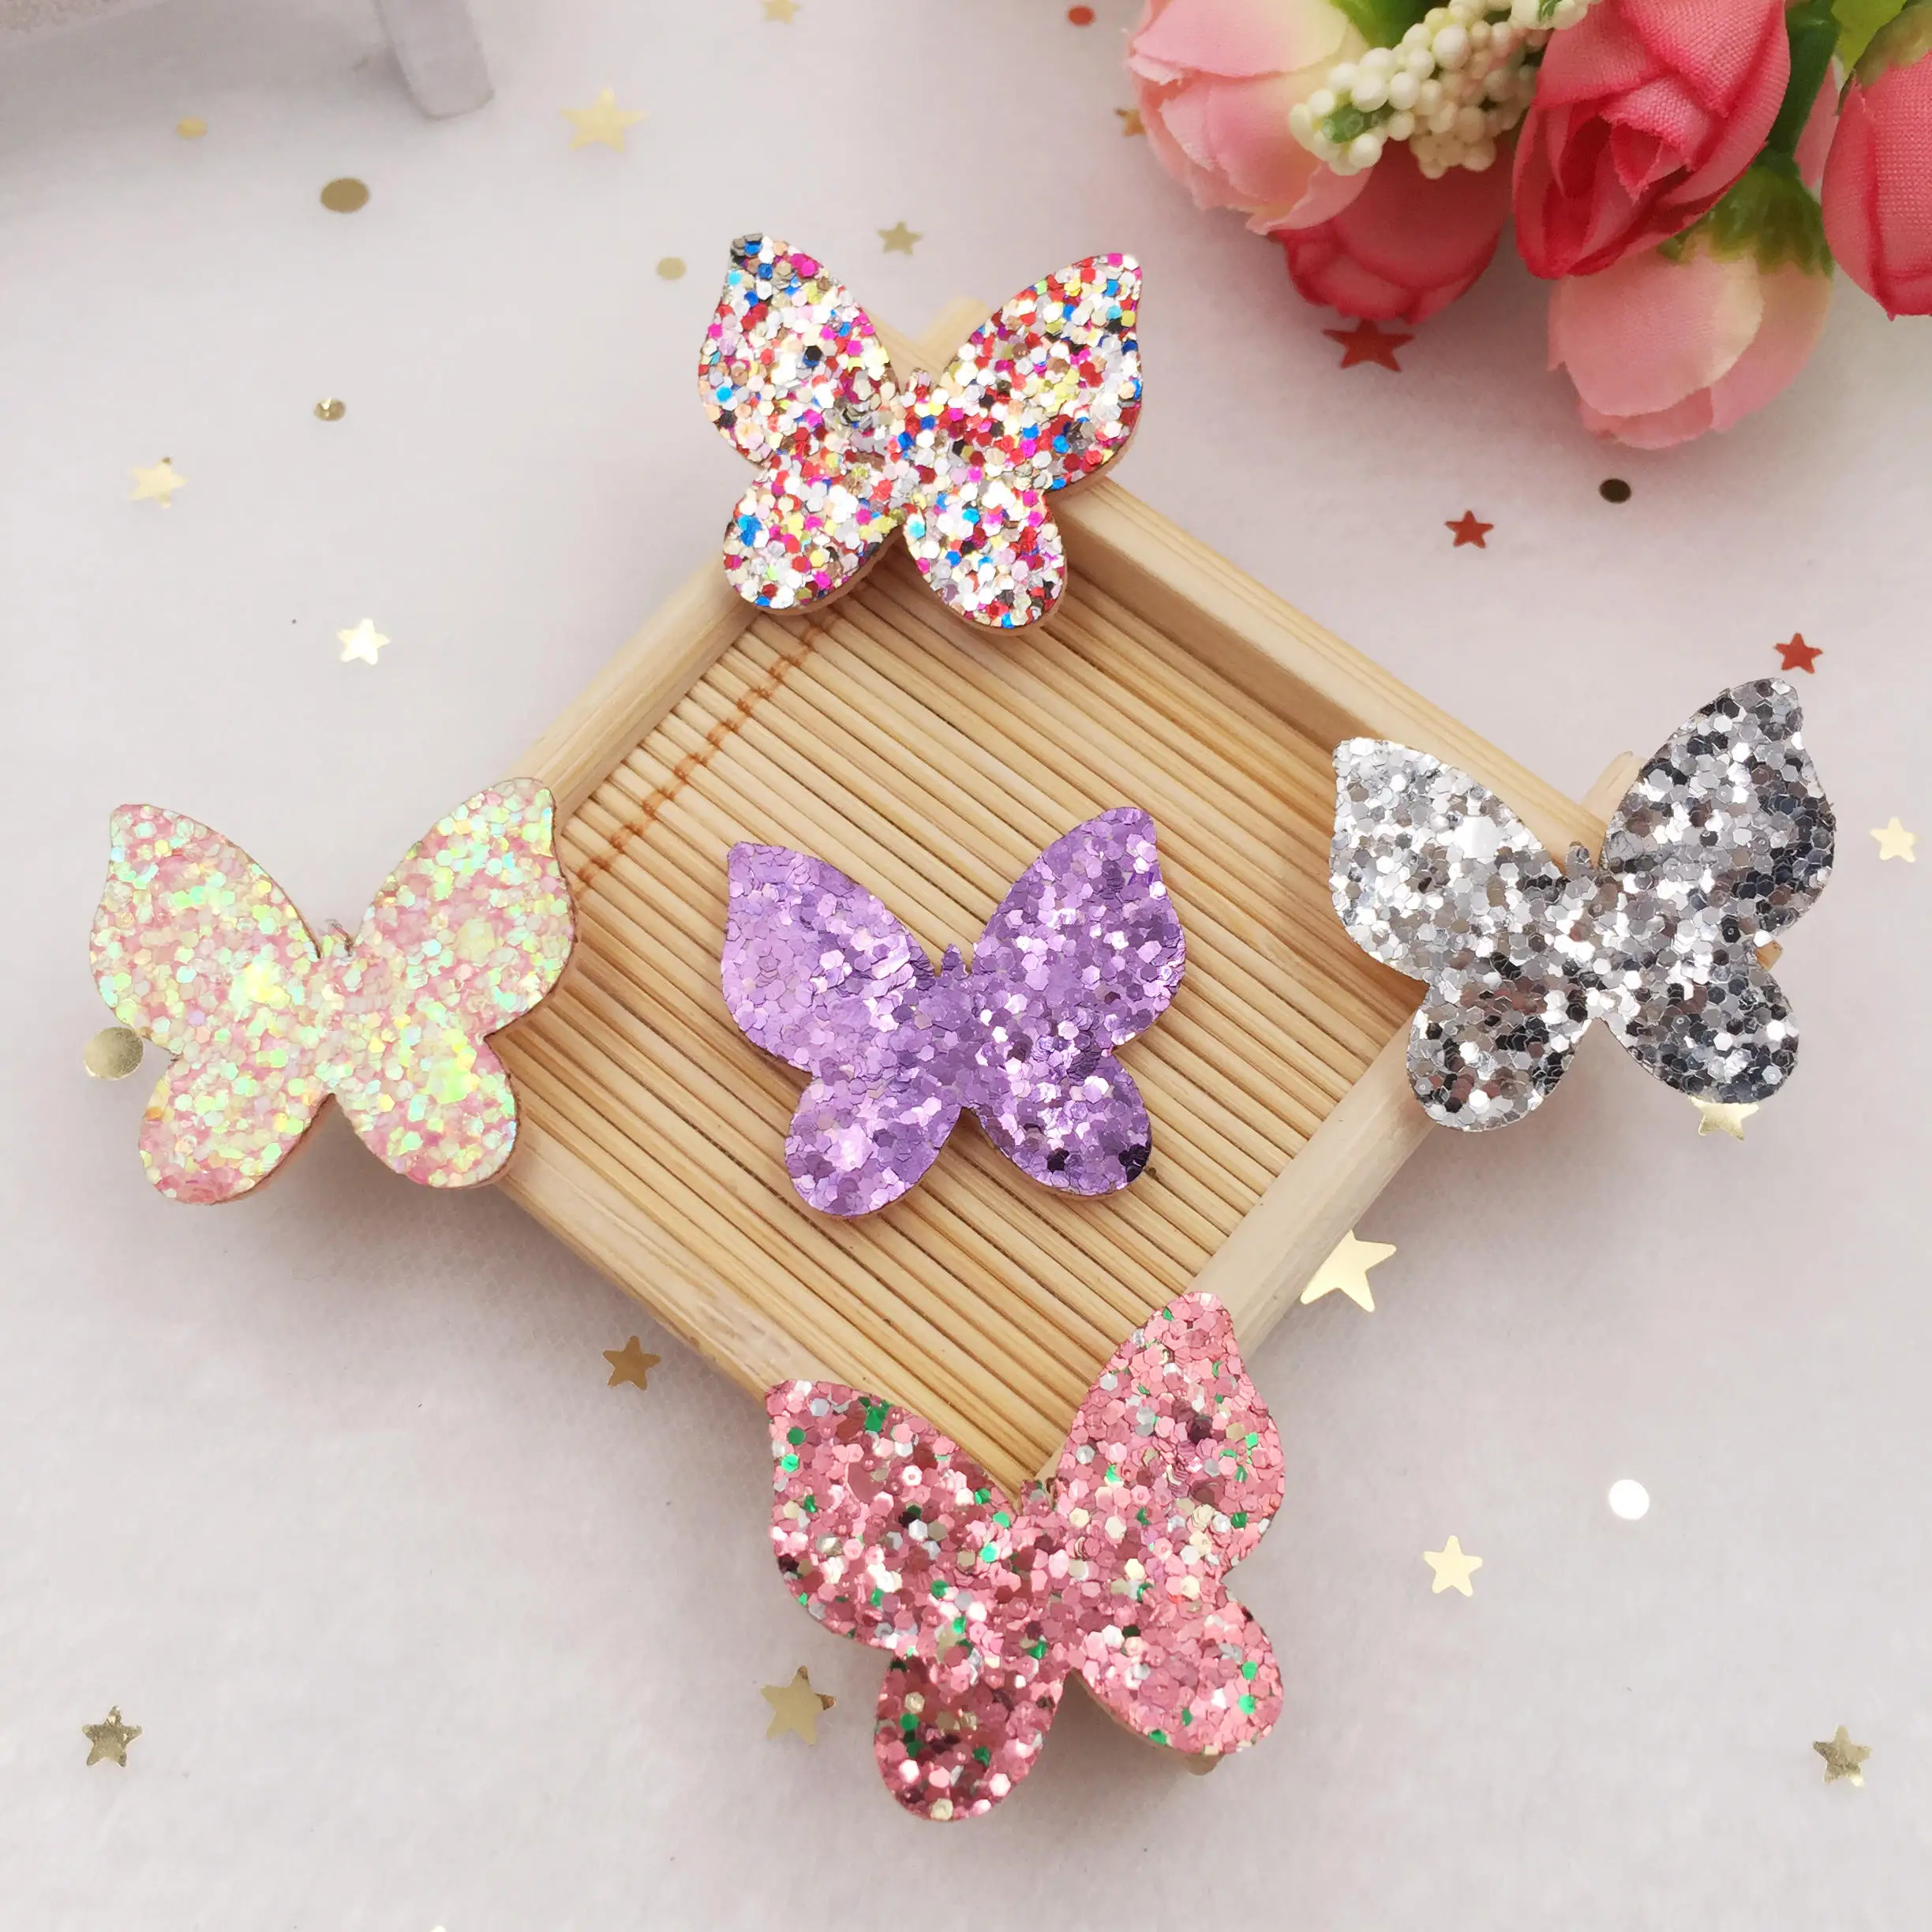 New 16pcs Felt Fabric Glitter Paillette Unicorn Patches Appliques wedding DIY